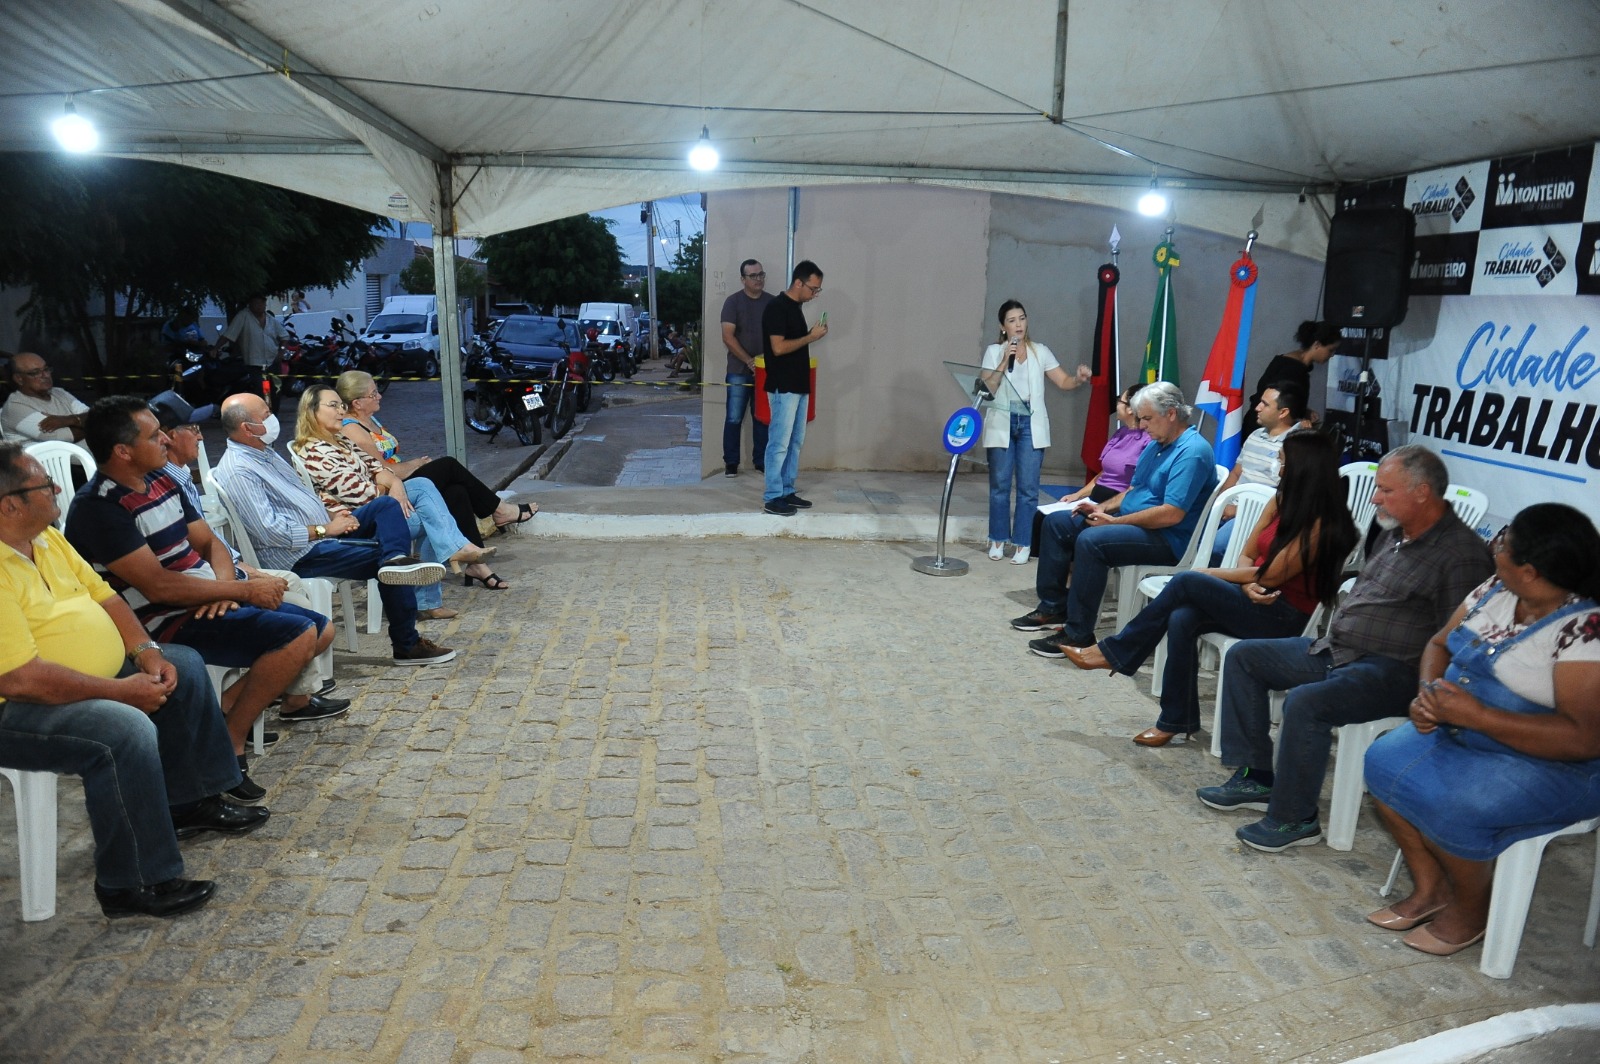 Pavimentacao-11 Cidade Trabalho: Prefeita Anna Lorena entrega mais uma rua pavimentada em Monteiro